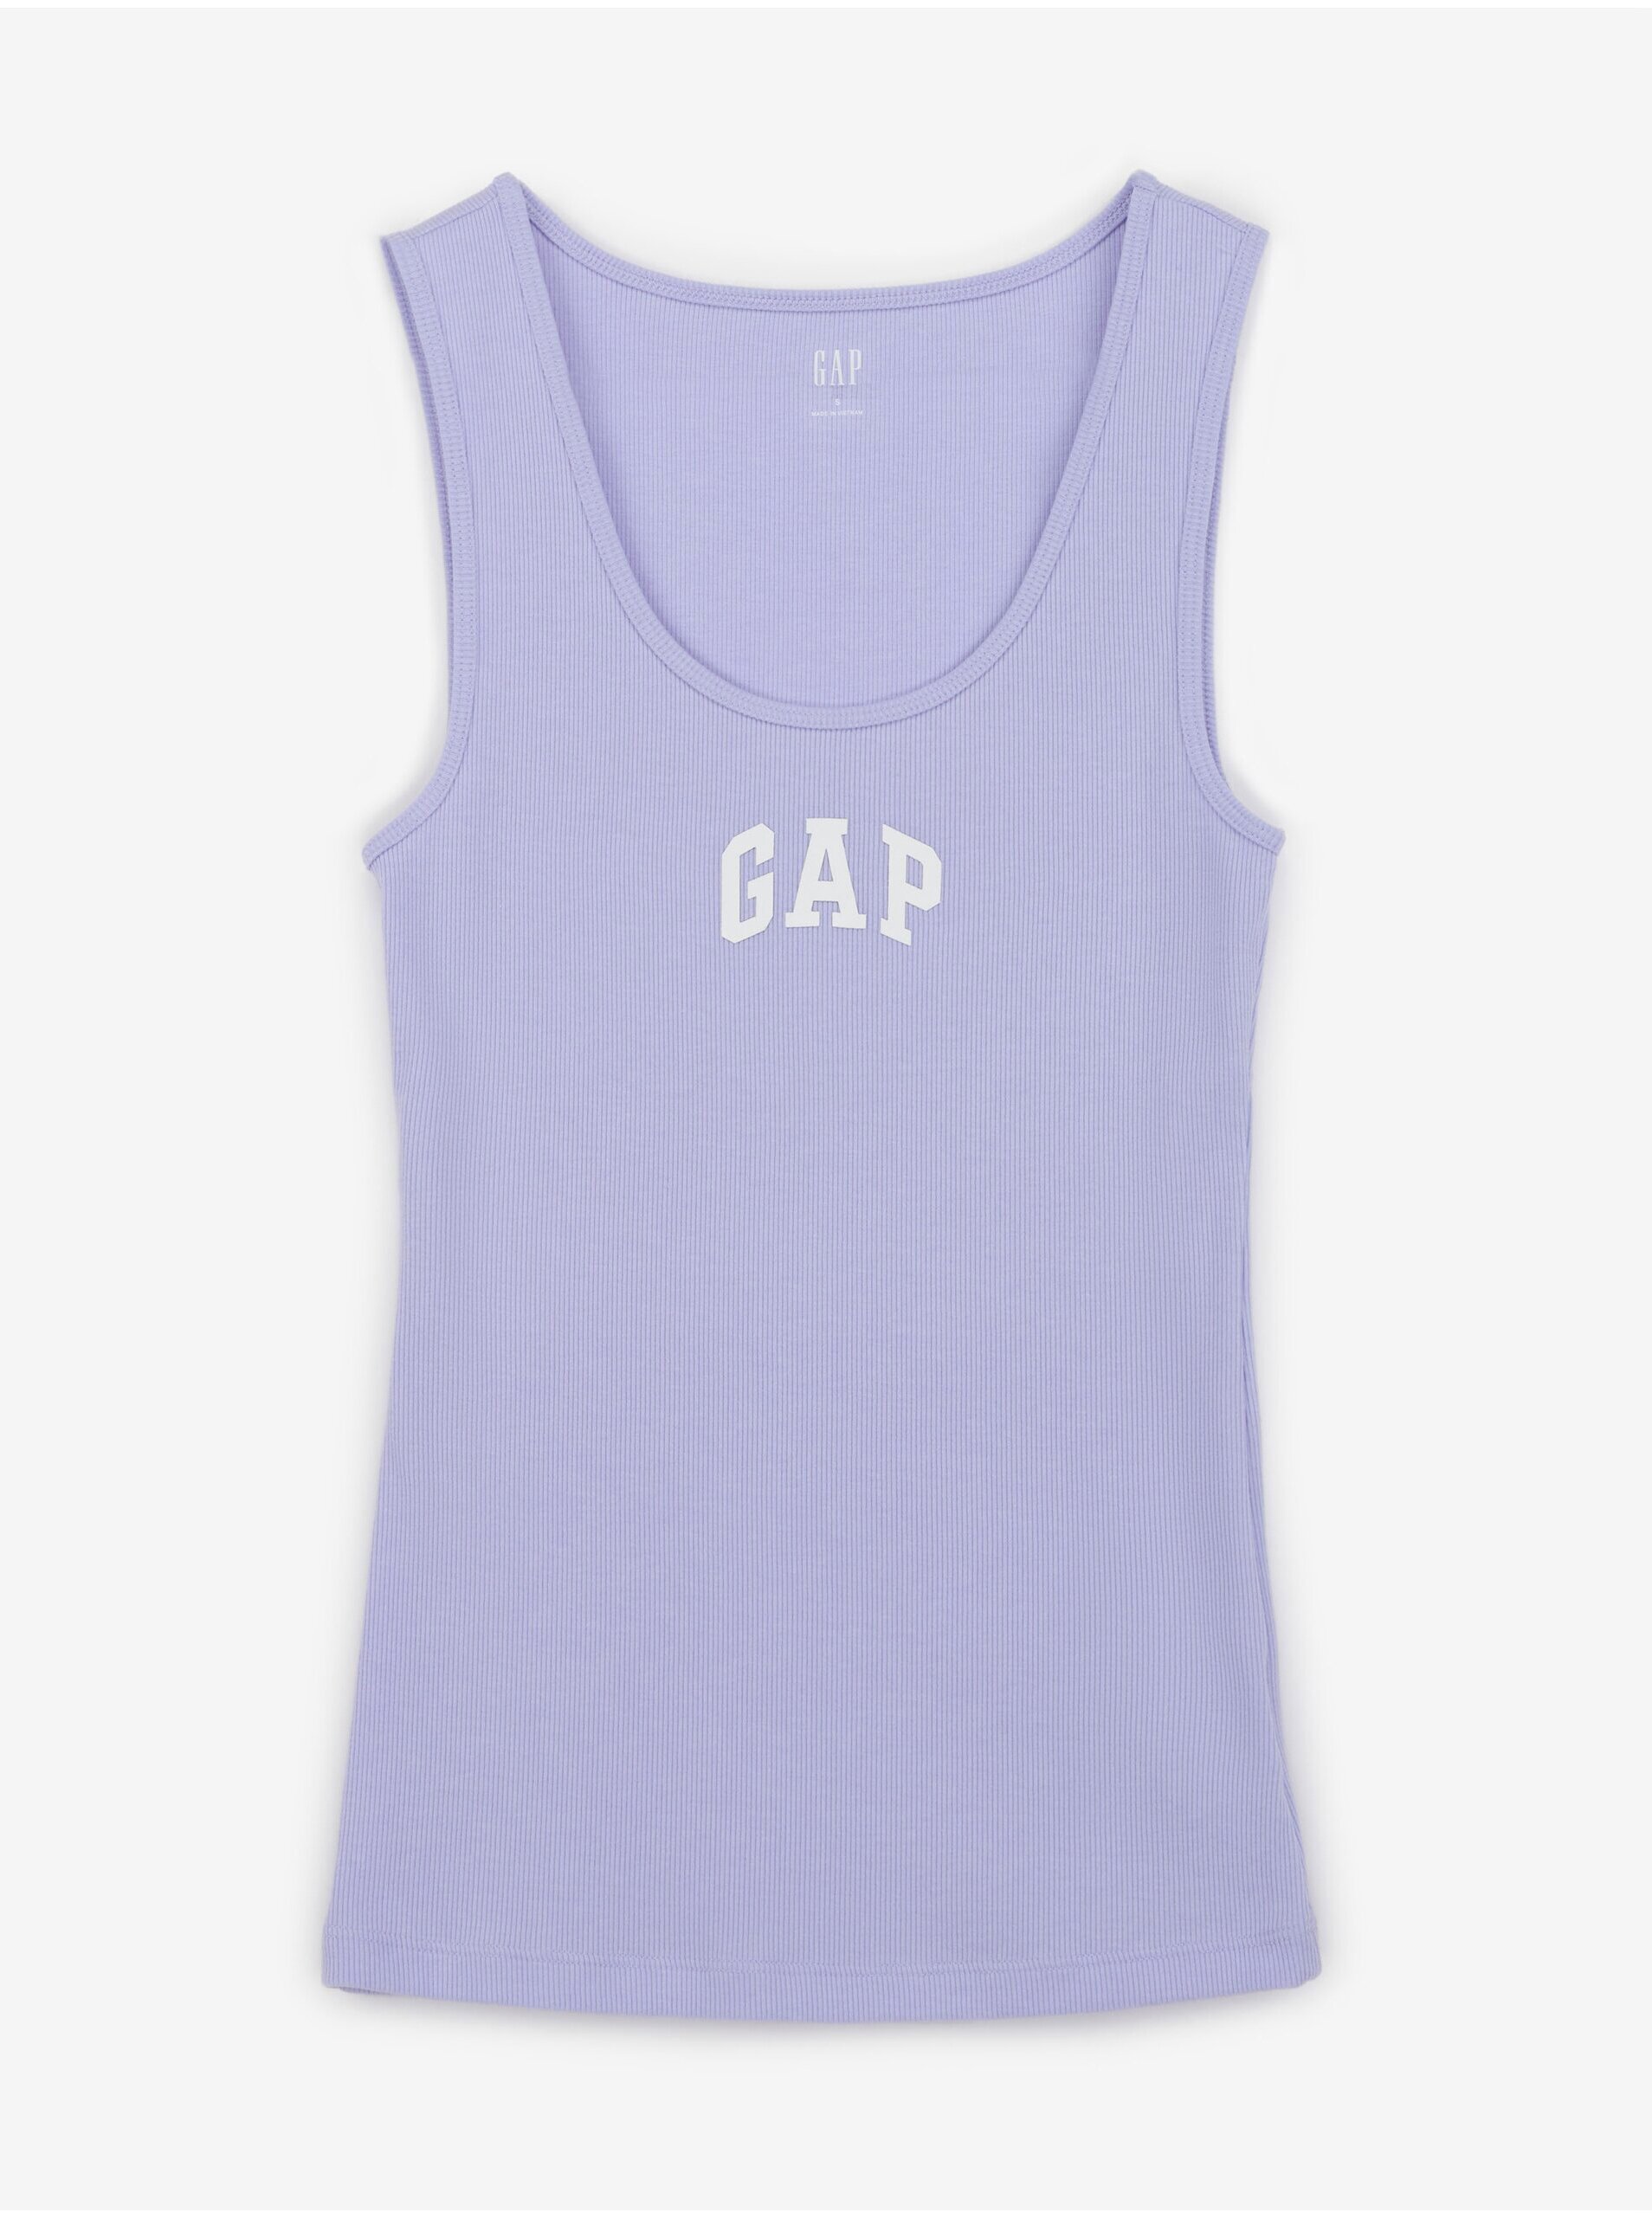 Lacno Svetlo fialové dámske rebrované tielko s logom GAP